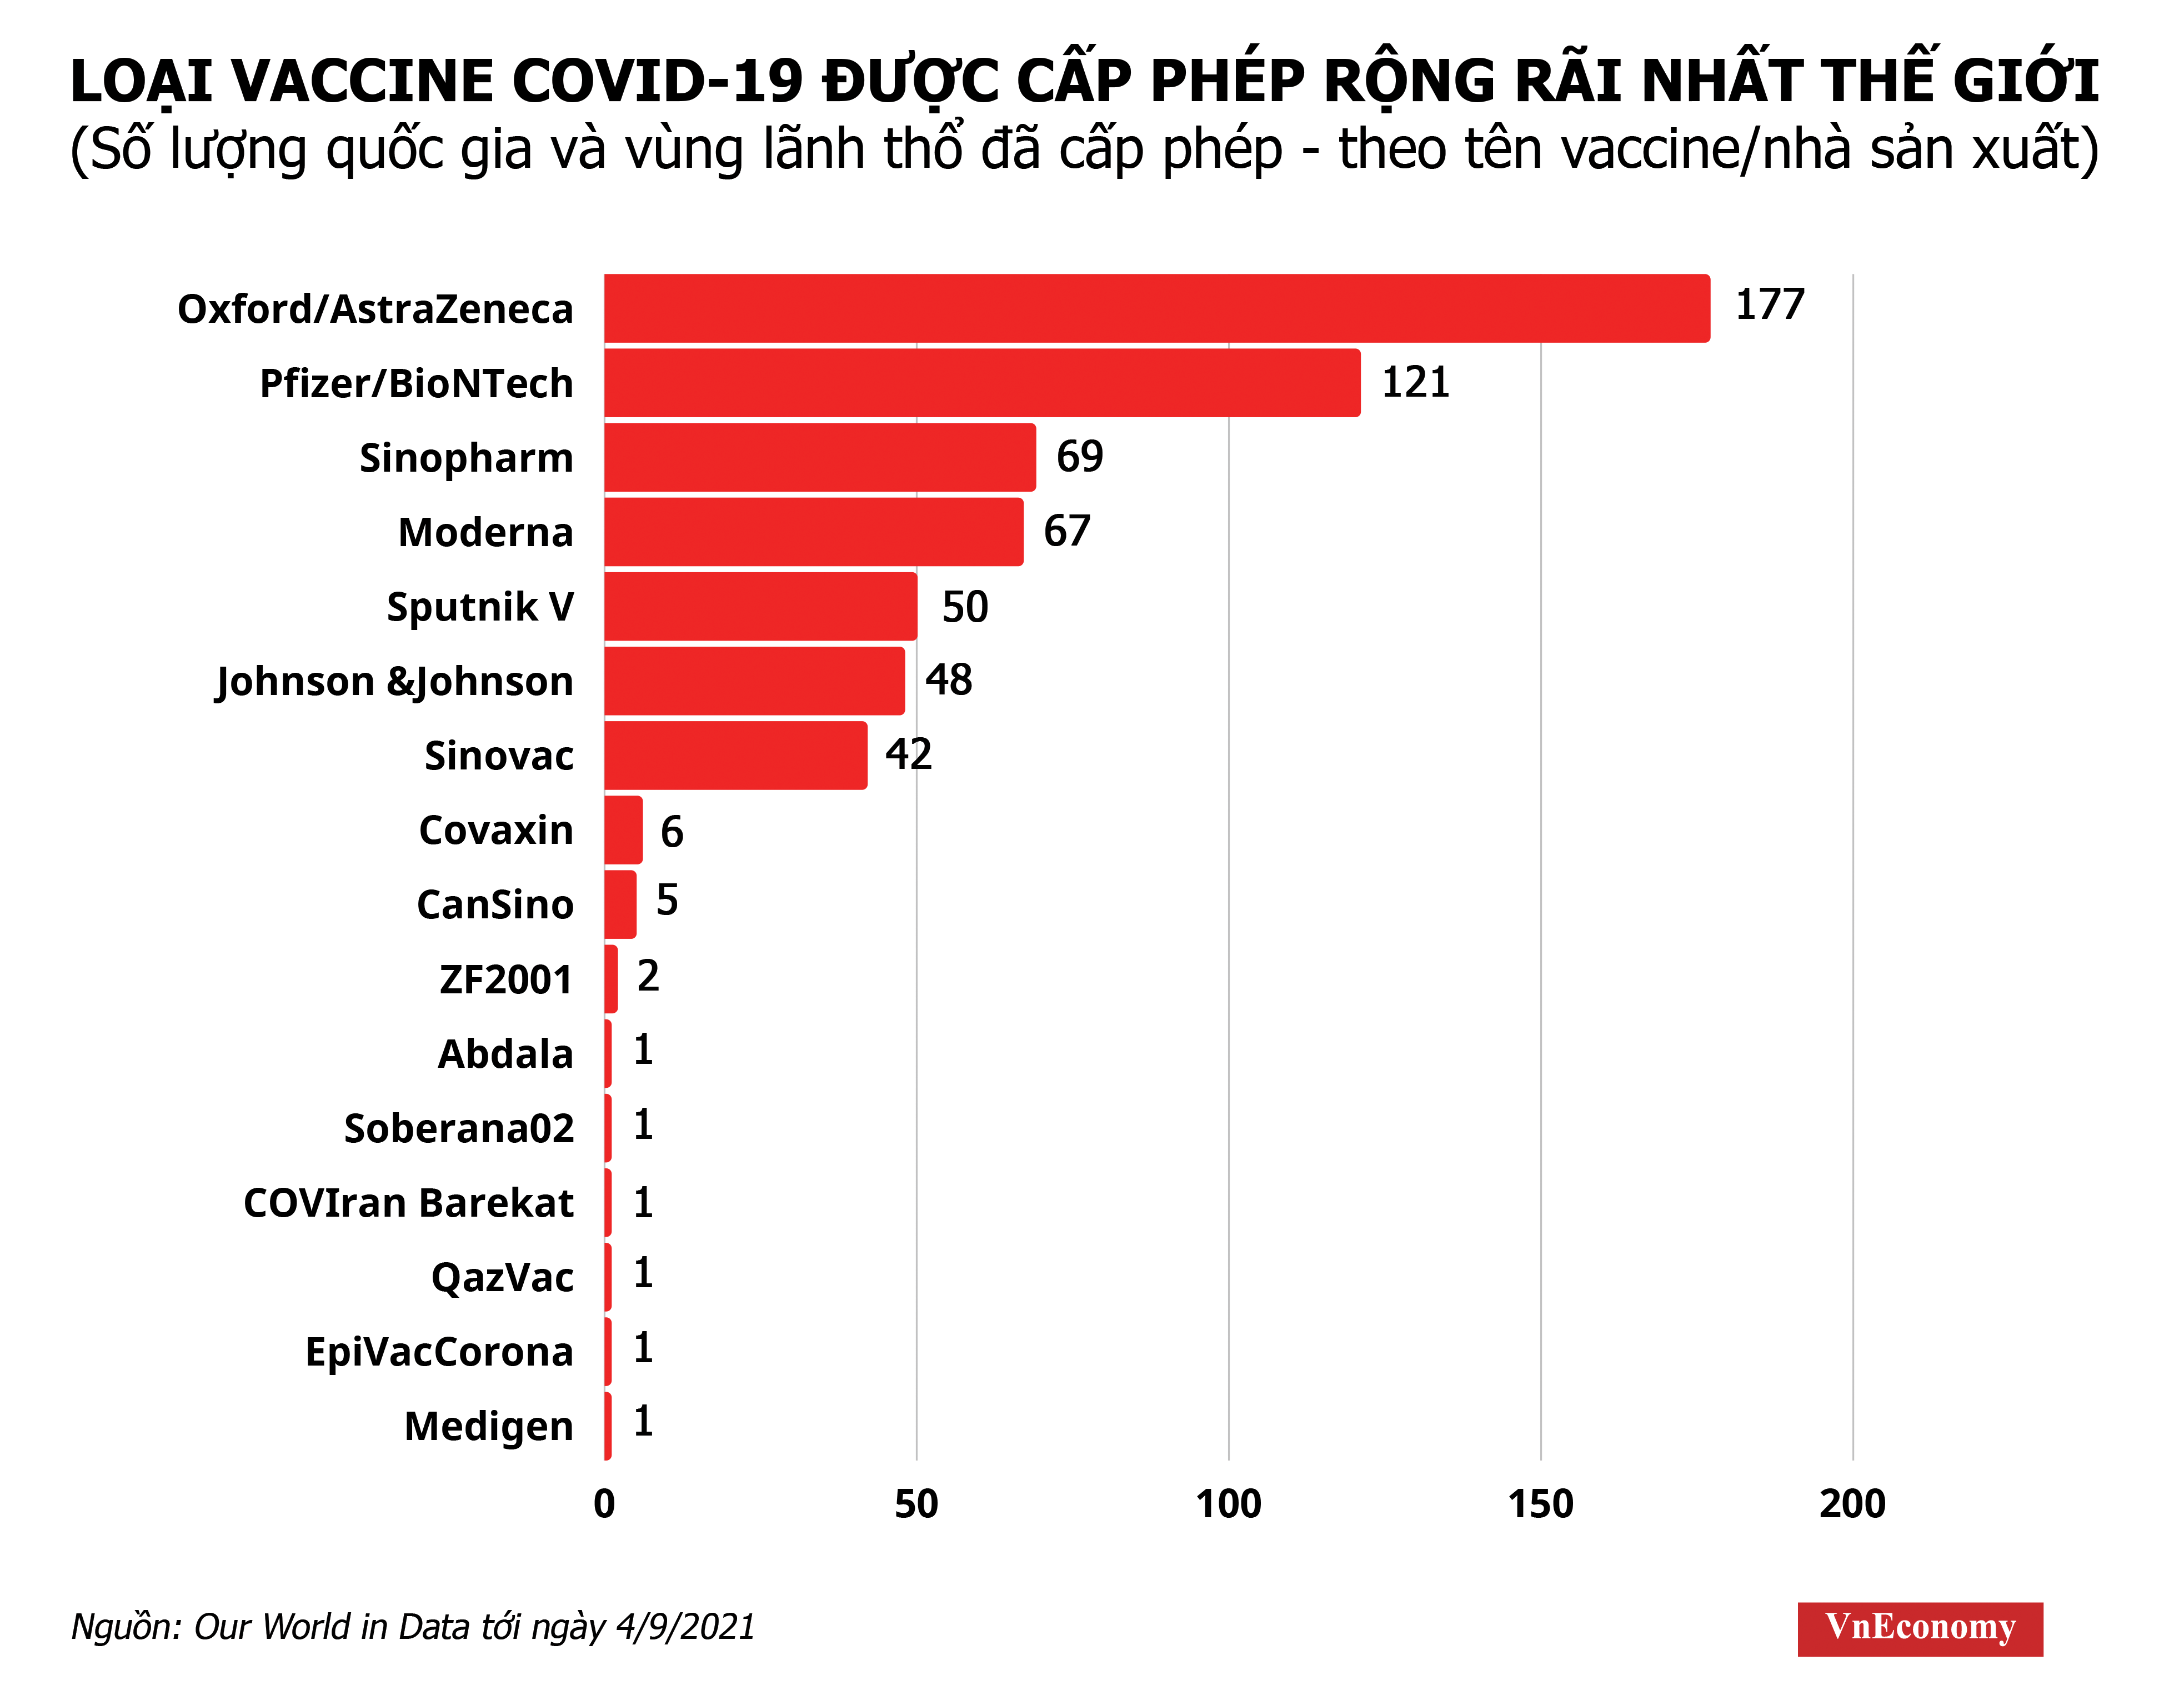 Vaccine Covid-19 nào được cấp phép rộng rãi nhất trên thế giới? - Ảnh 1